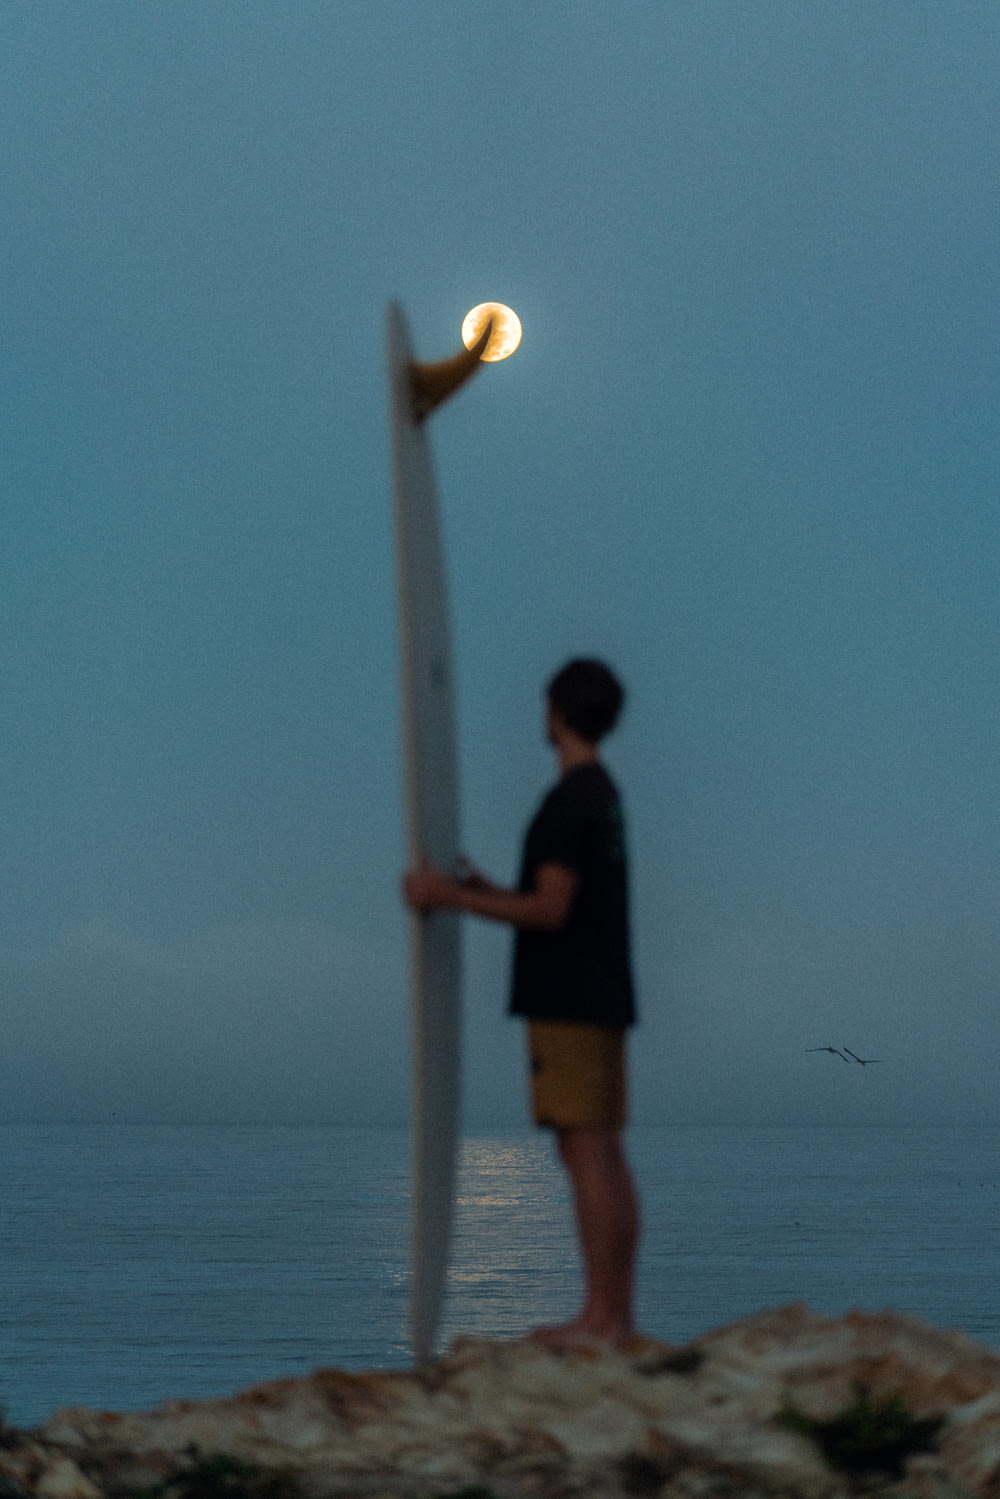 a man standing next to a light post on a beach